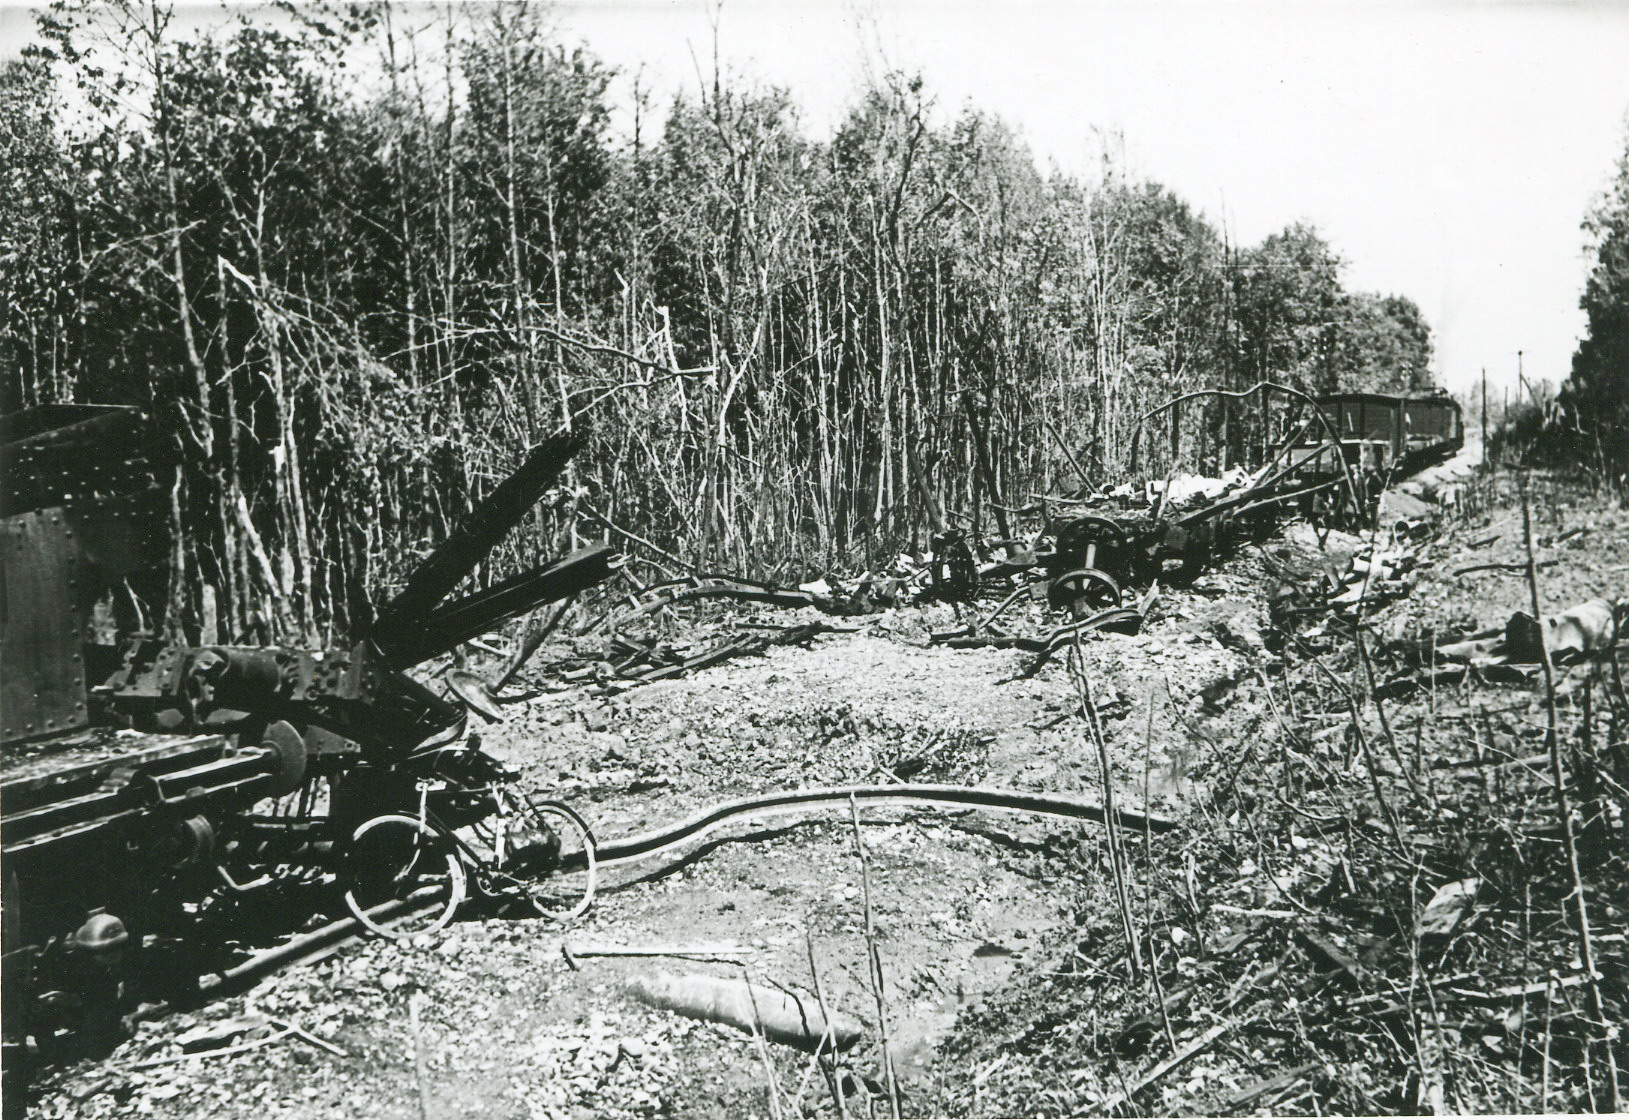 Ligne Maginot - 373° Régiment d'Artillerie Lourde sur Voie Ferrée (373° RALVF) - Train ALVF détruit près de Altenach (68).
Probablement un convoi du 373° RALVF en place dans ce secteur